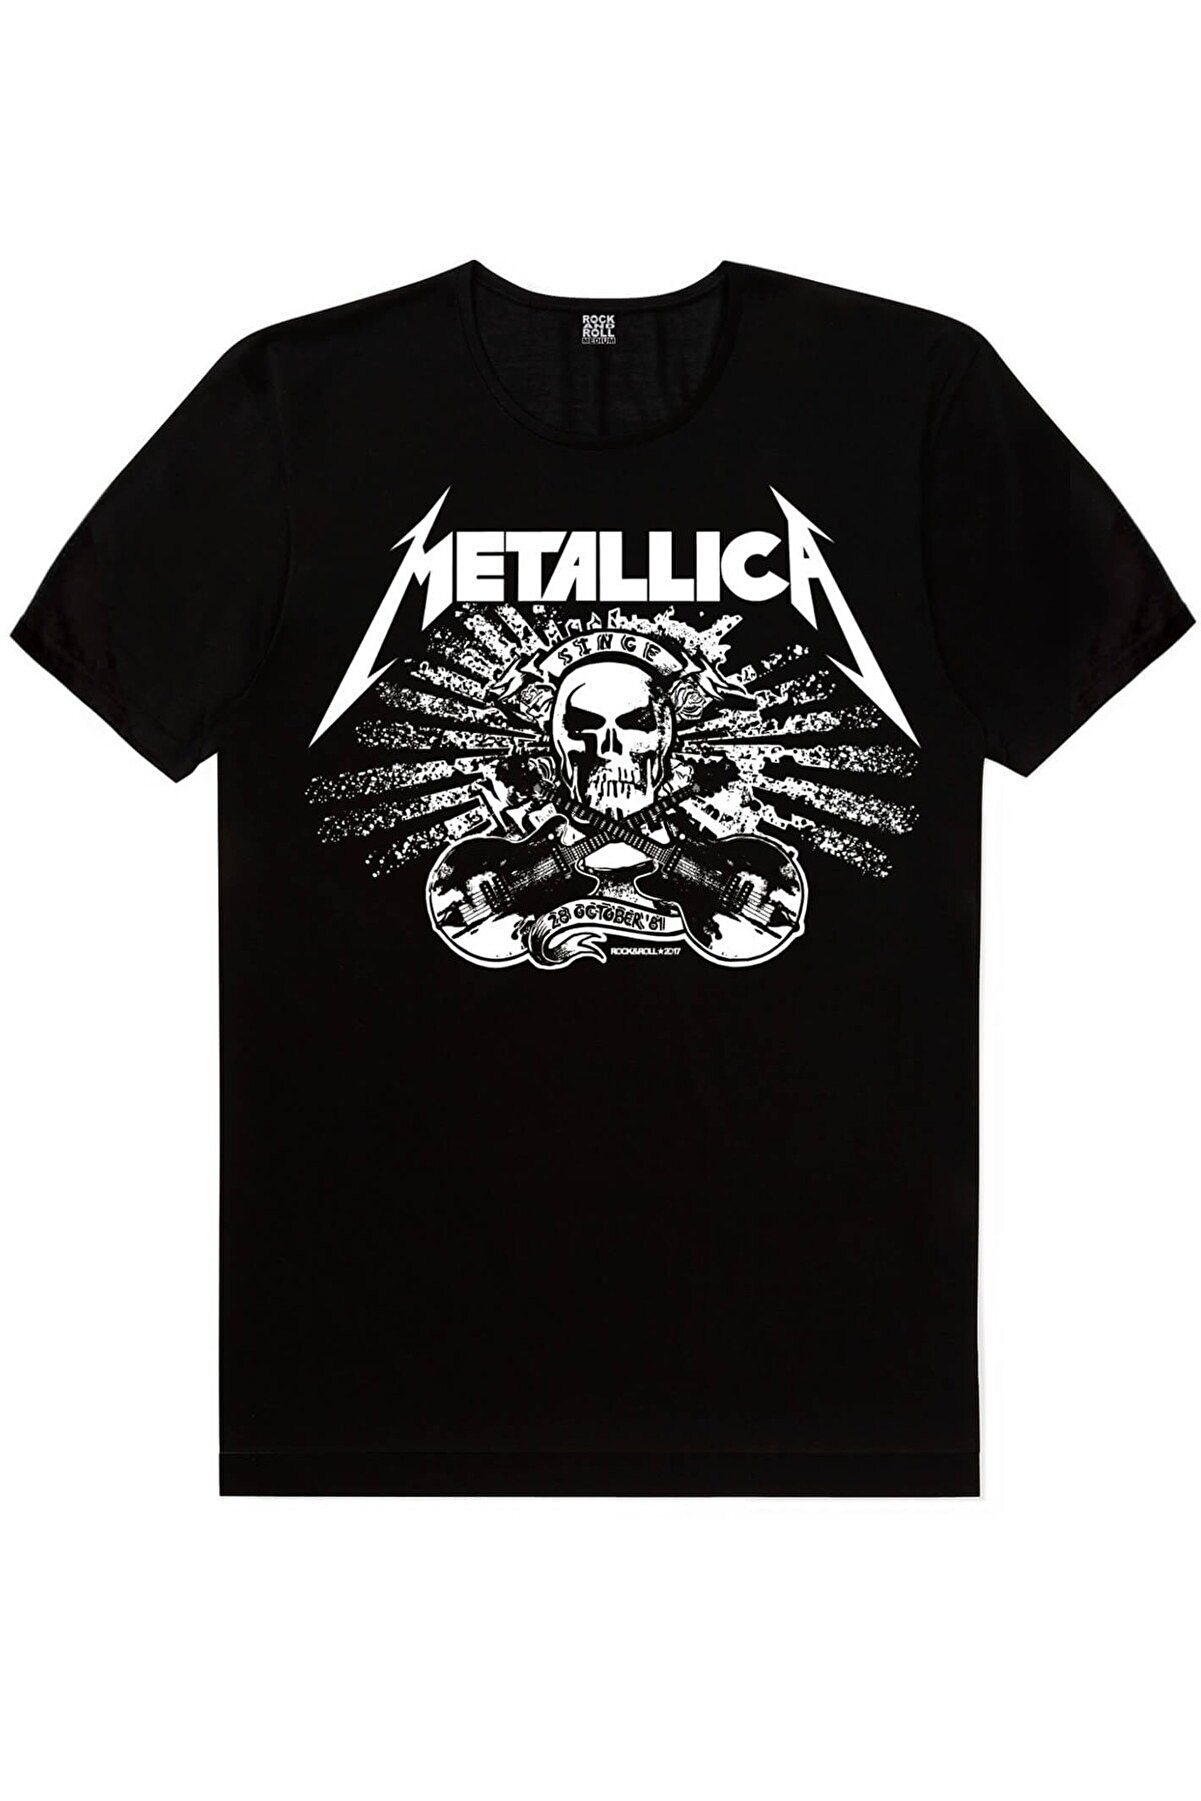 Motorcu Kurukafa, Metallica Kurukafa, Sörf Kurukafa Kadın 3'lü Eko Paket T-shirt